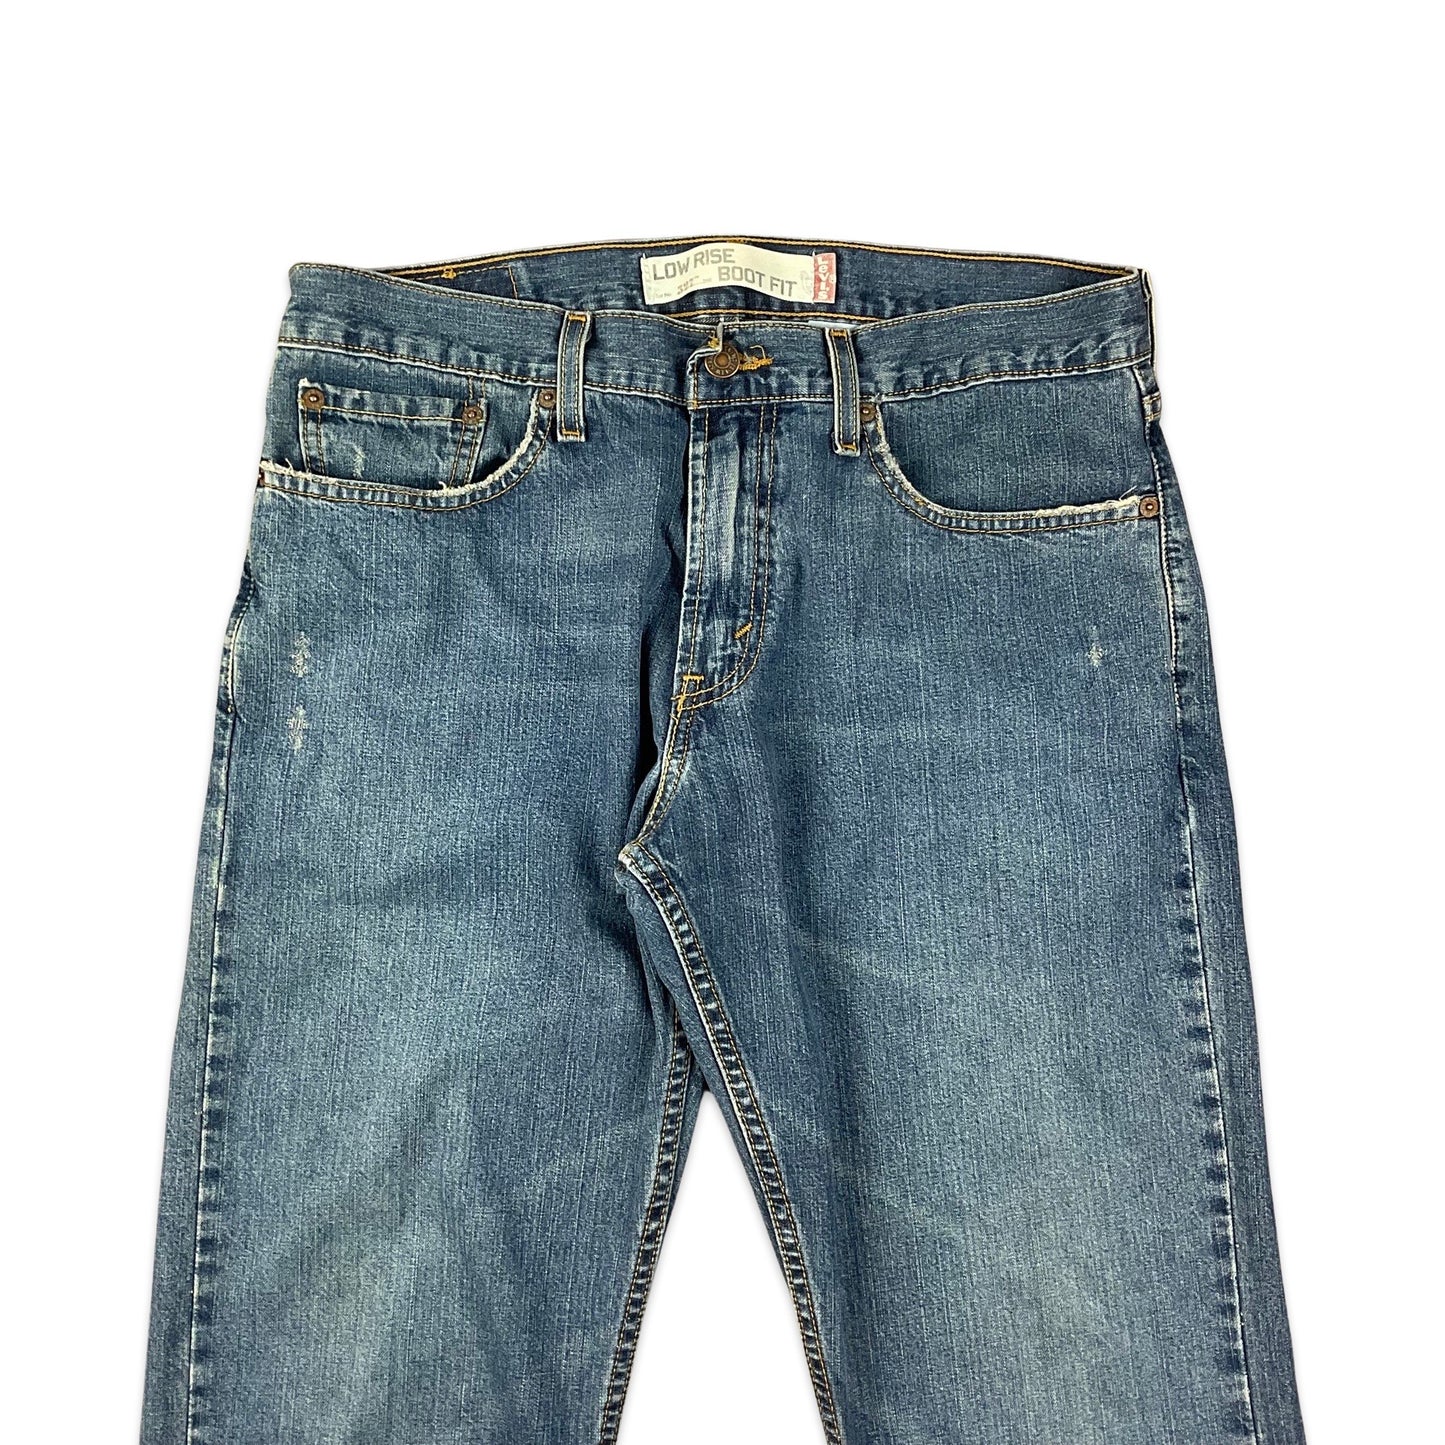 Levi's 527 Blue Jeans 33W 31L